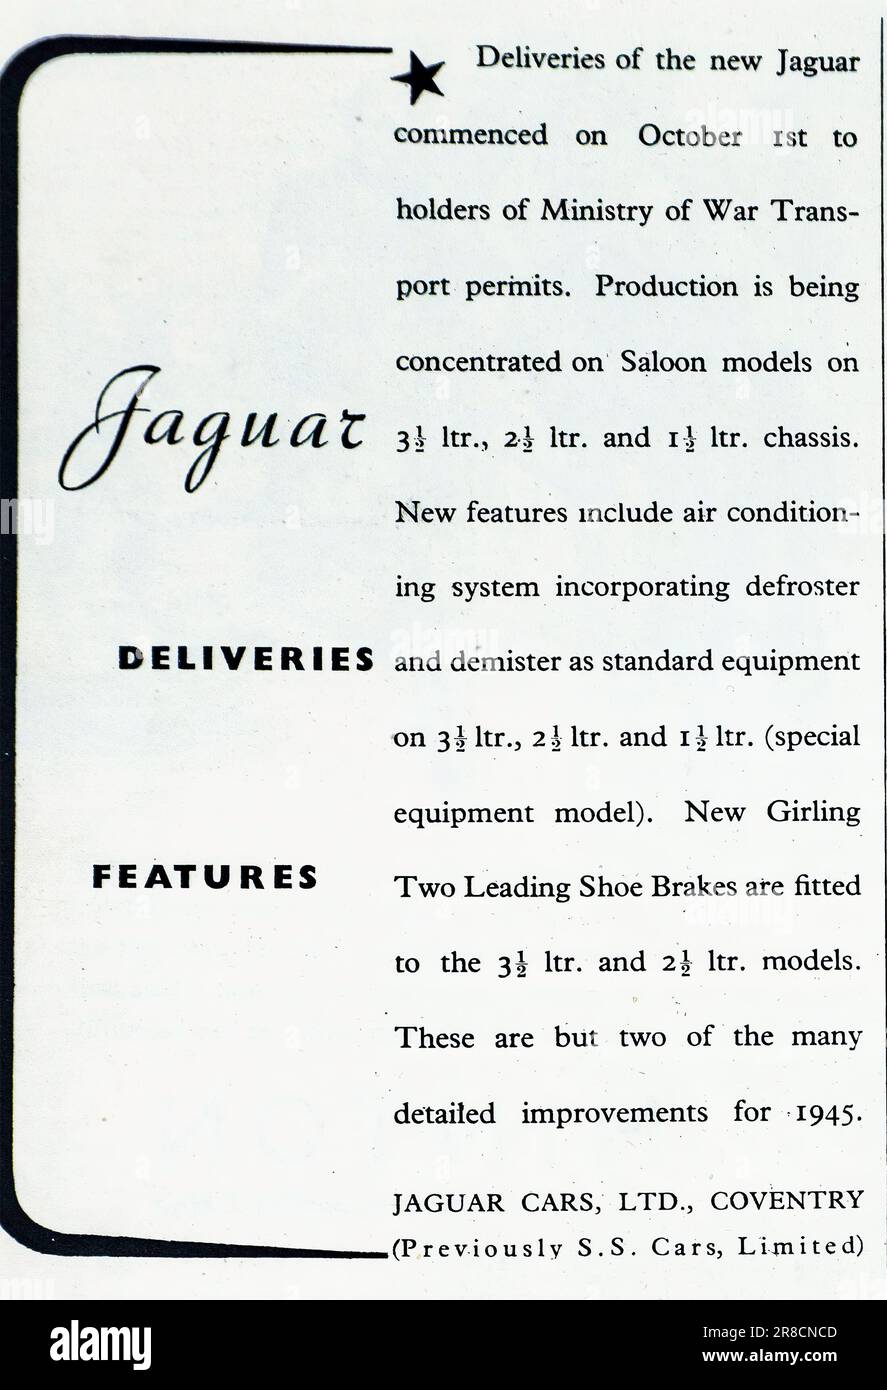 Eine 1945-Nachkriegswerbung für Jaguar Autos. Die Produktion von Jaguar Fahrzeugen wurde im Oktober 1944 wieder aufgenommen, als der 2. Weltkrieg kurz vor dem Abschluss stand. Die Verkäufe beschränkten sich jedoch auf Inhaber von Transportgenehmigungen des Kriegsministeriums. Während des Krieges wurden keine privaten Autos, Nutzfahrzeuge oder Motorteile für den persönlichen Gebrauch hergestellt. Die britische Automobilindustrie hat sich umstrukturiert, um Fahrzeuge und Ausrüstung für den Kriegseinsatz herzustellen. Jaguar stellte insbesondere Komponenten für Militärflugzeuge her. In diesem Werbespot sind die Geräte aufgeführt, die in diesen neuen Fahrzeugen eingebaut werden, wie z. B. Klimaanlage, Entfroster, Entfroster. Stockfoto